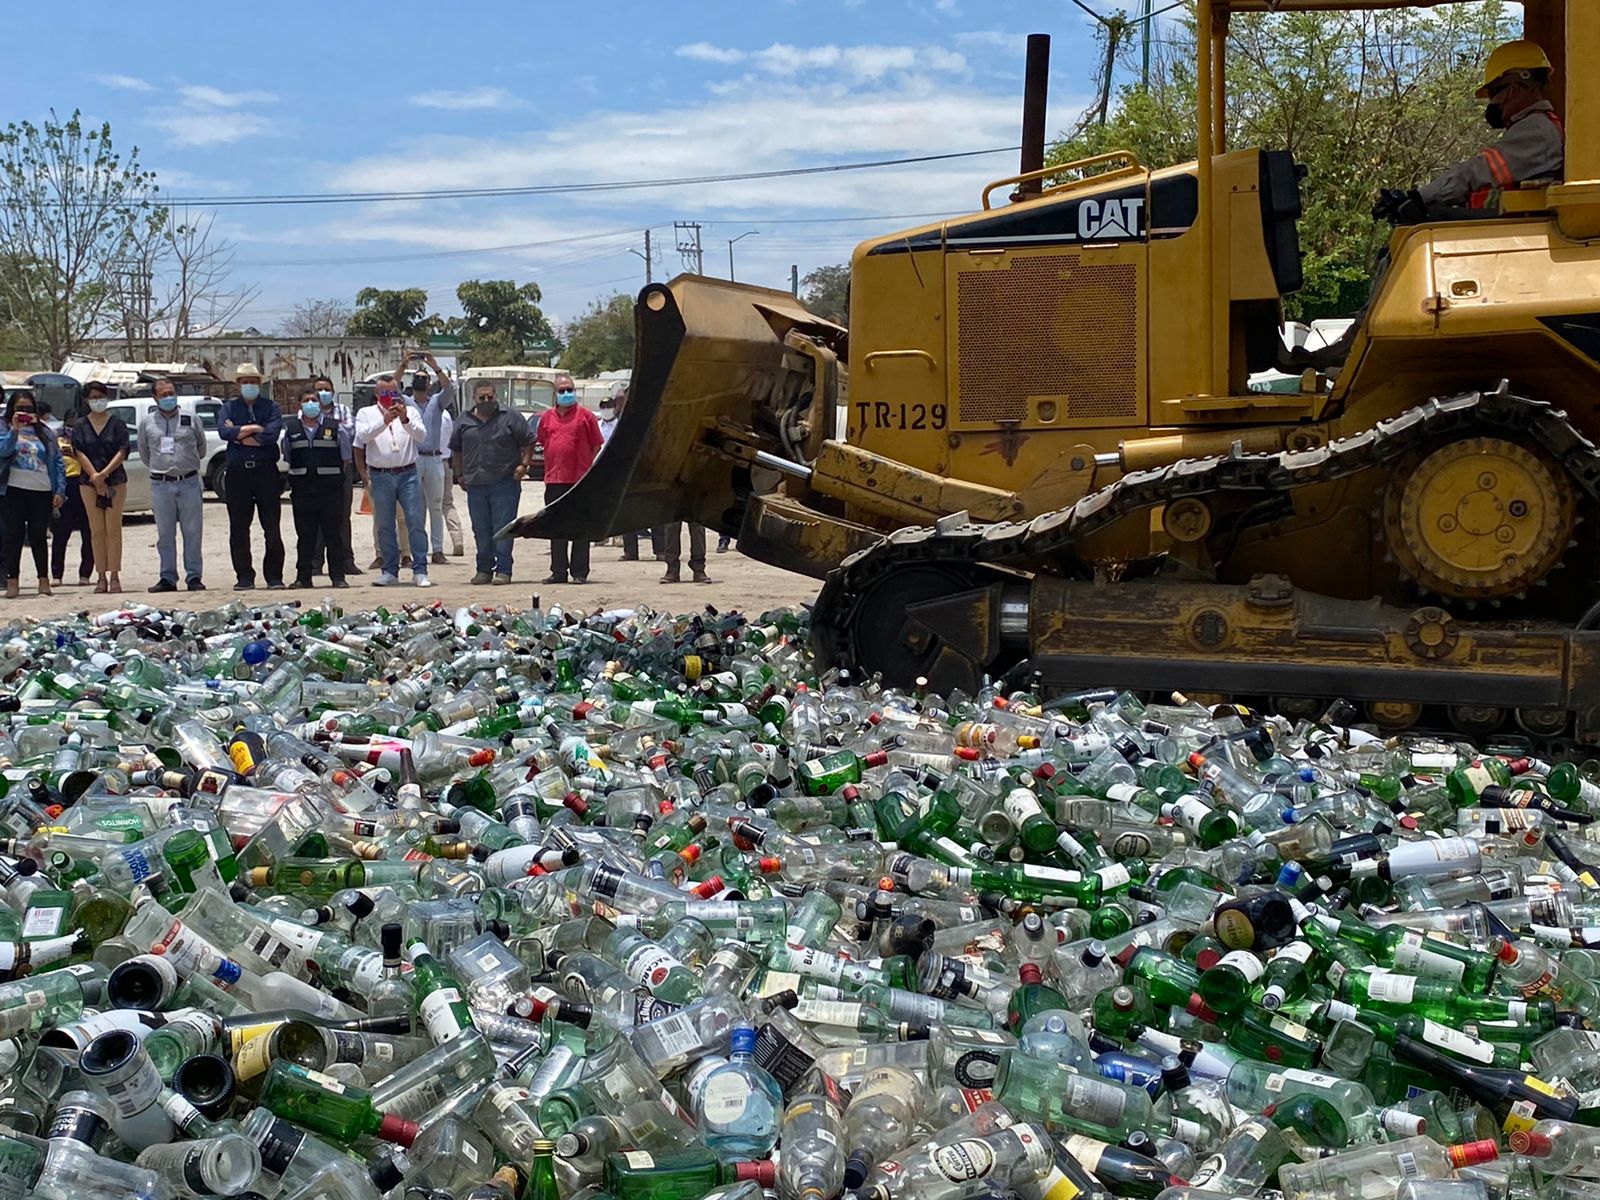 Encabeza Carlos Morales Vázquez la destrucción de botellas para evitar sean rellenadas con bebidas adulteradas